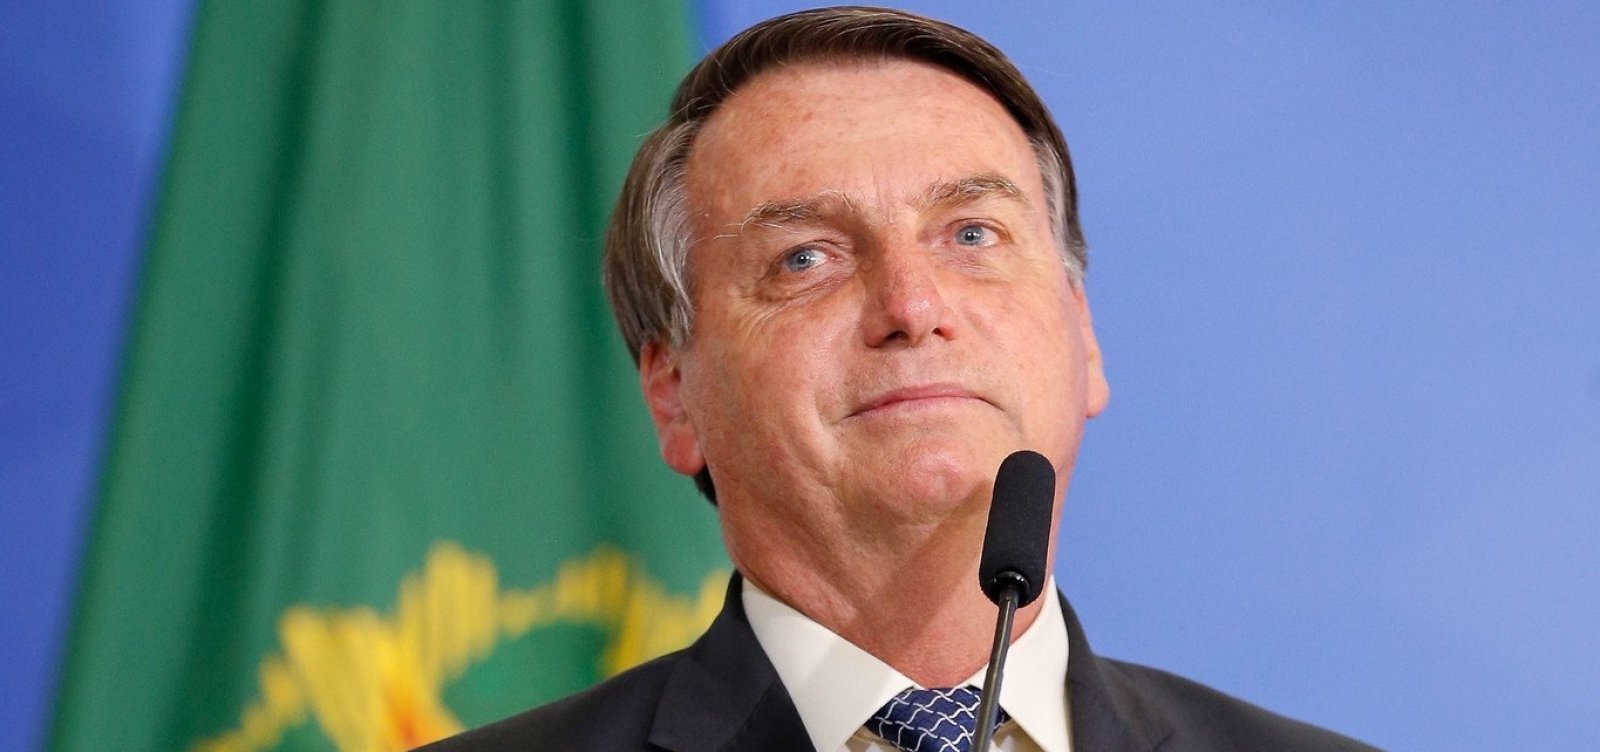 Republicanos abandona apoio à reeleição de Bolsonaro, diz revista